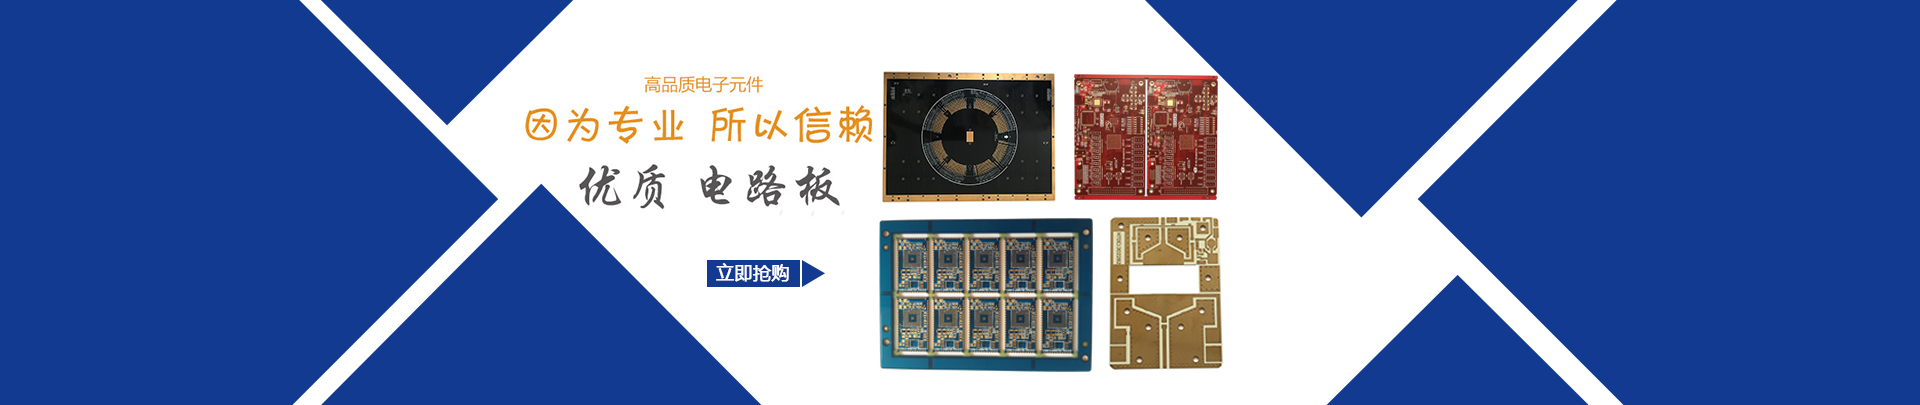 High precision circuit board